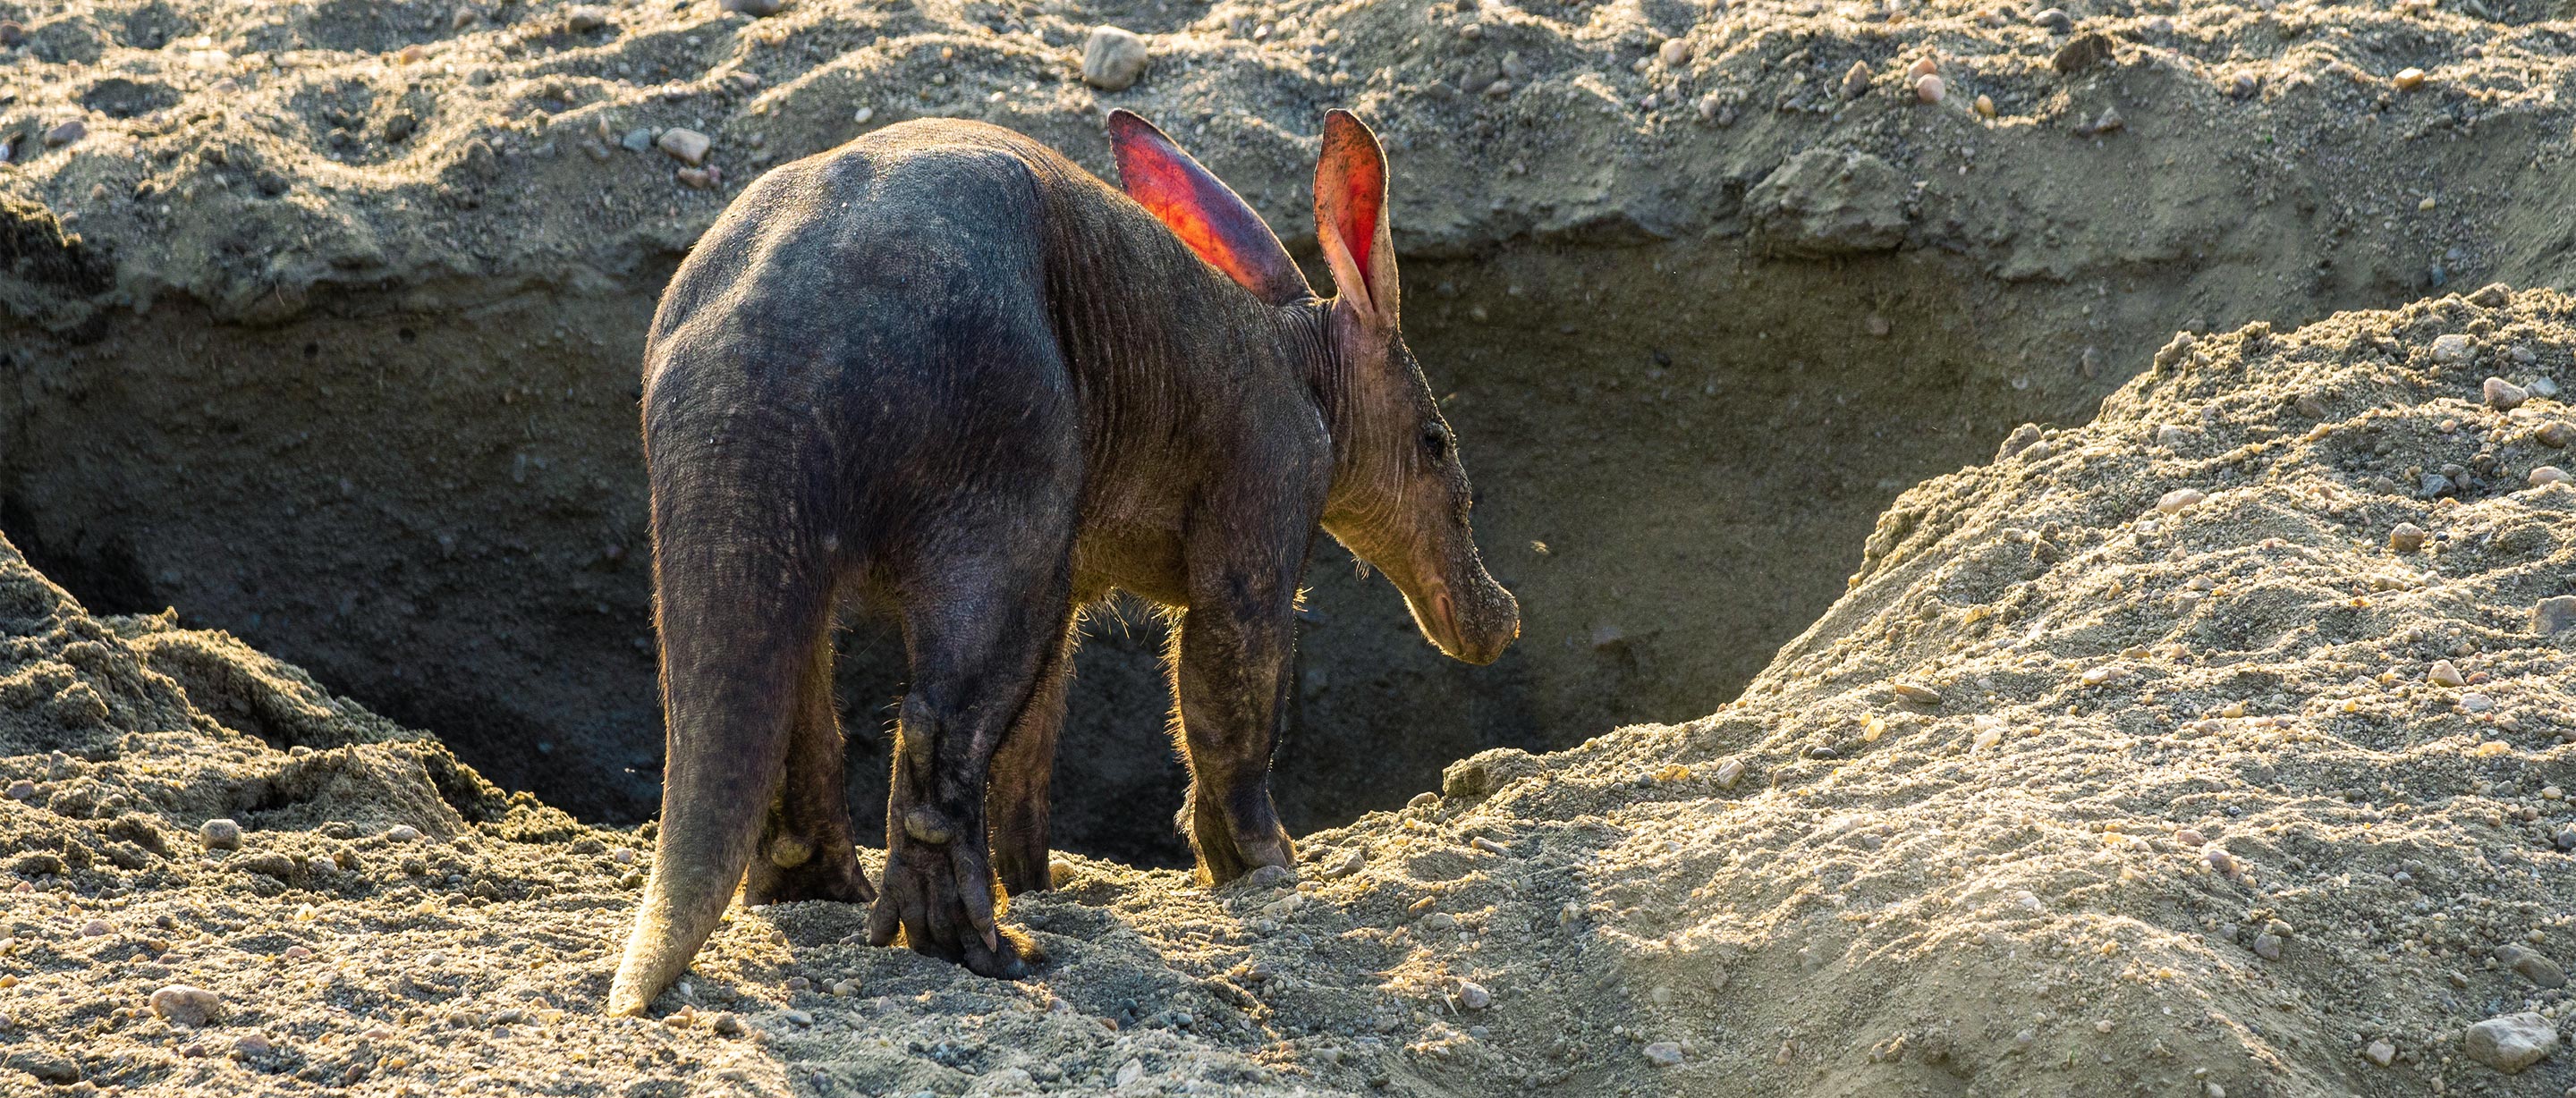 Aardvark | African Wildlife Foundation